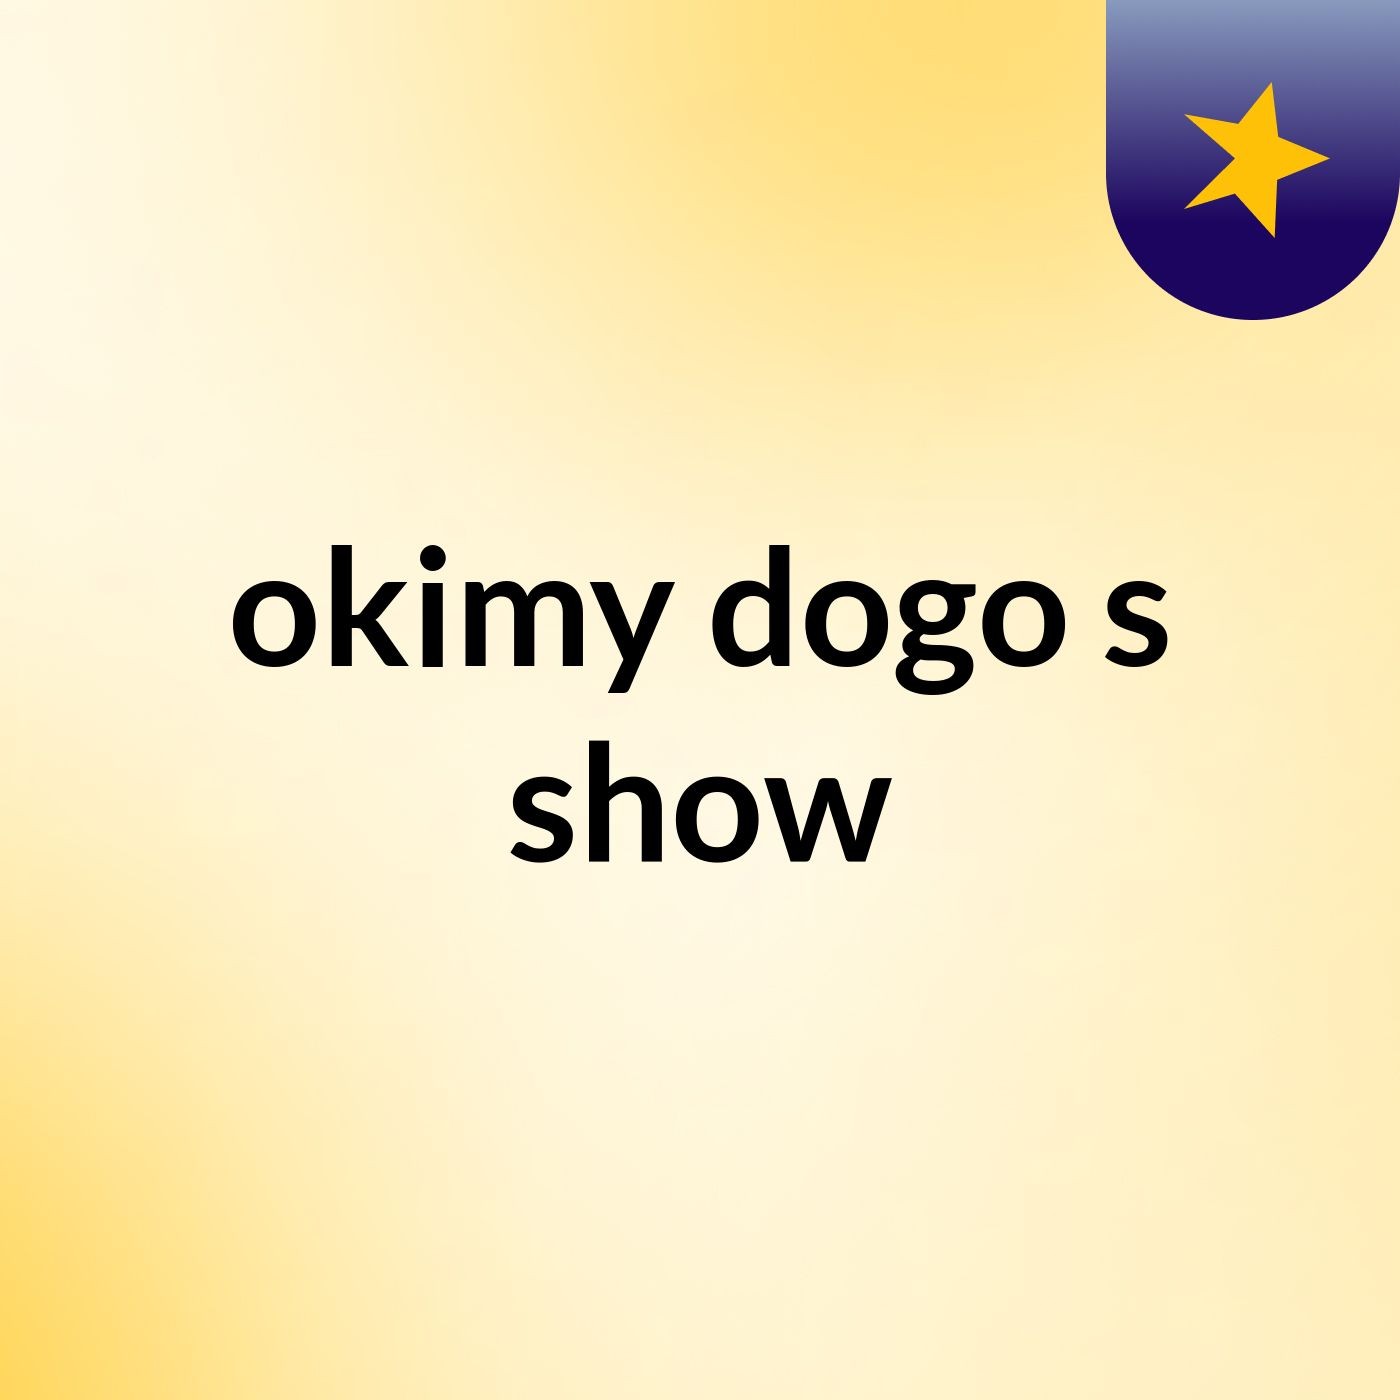 okimy dogo's show